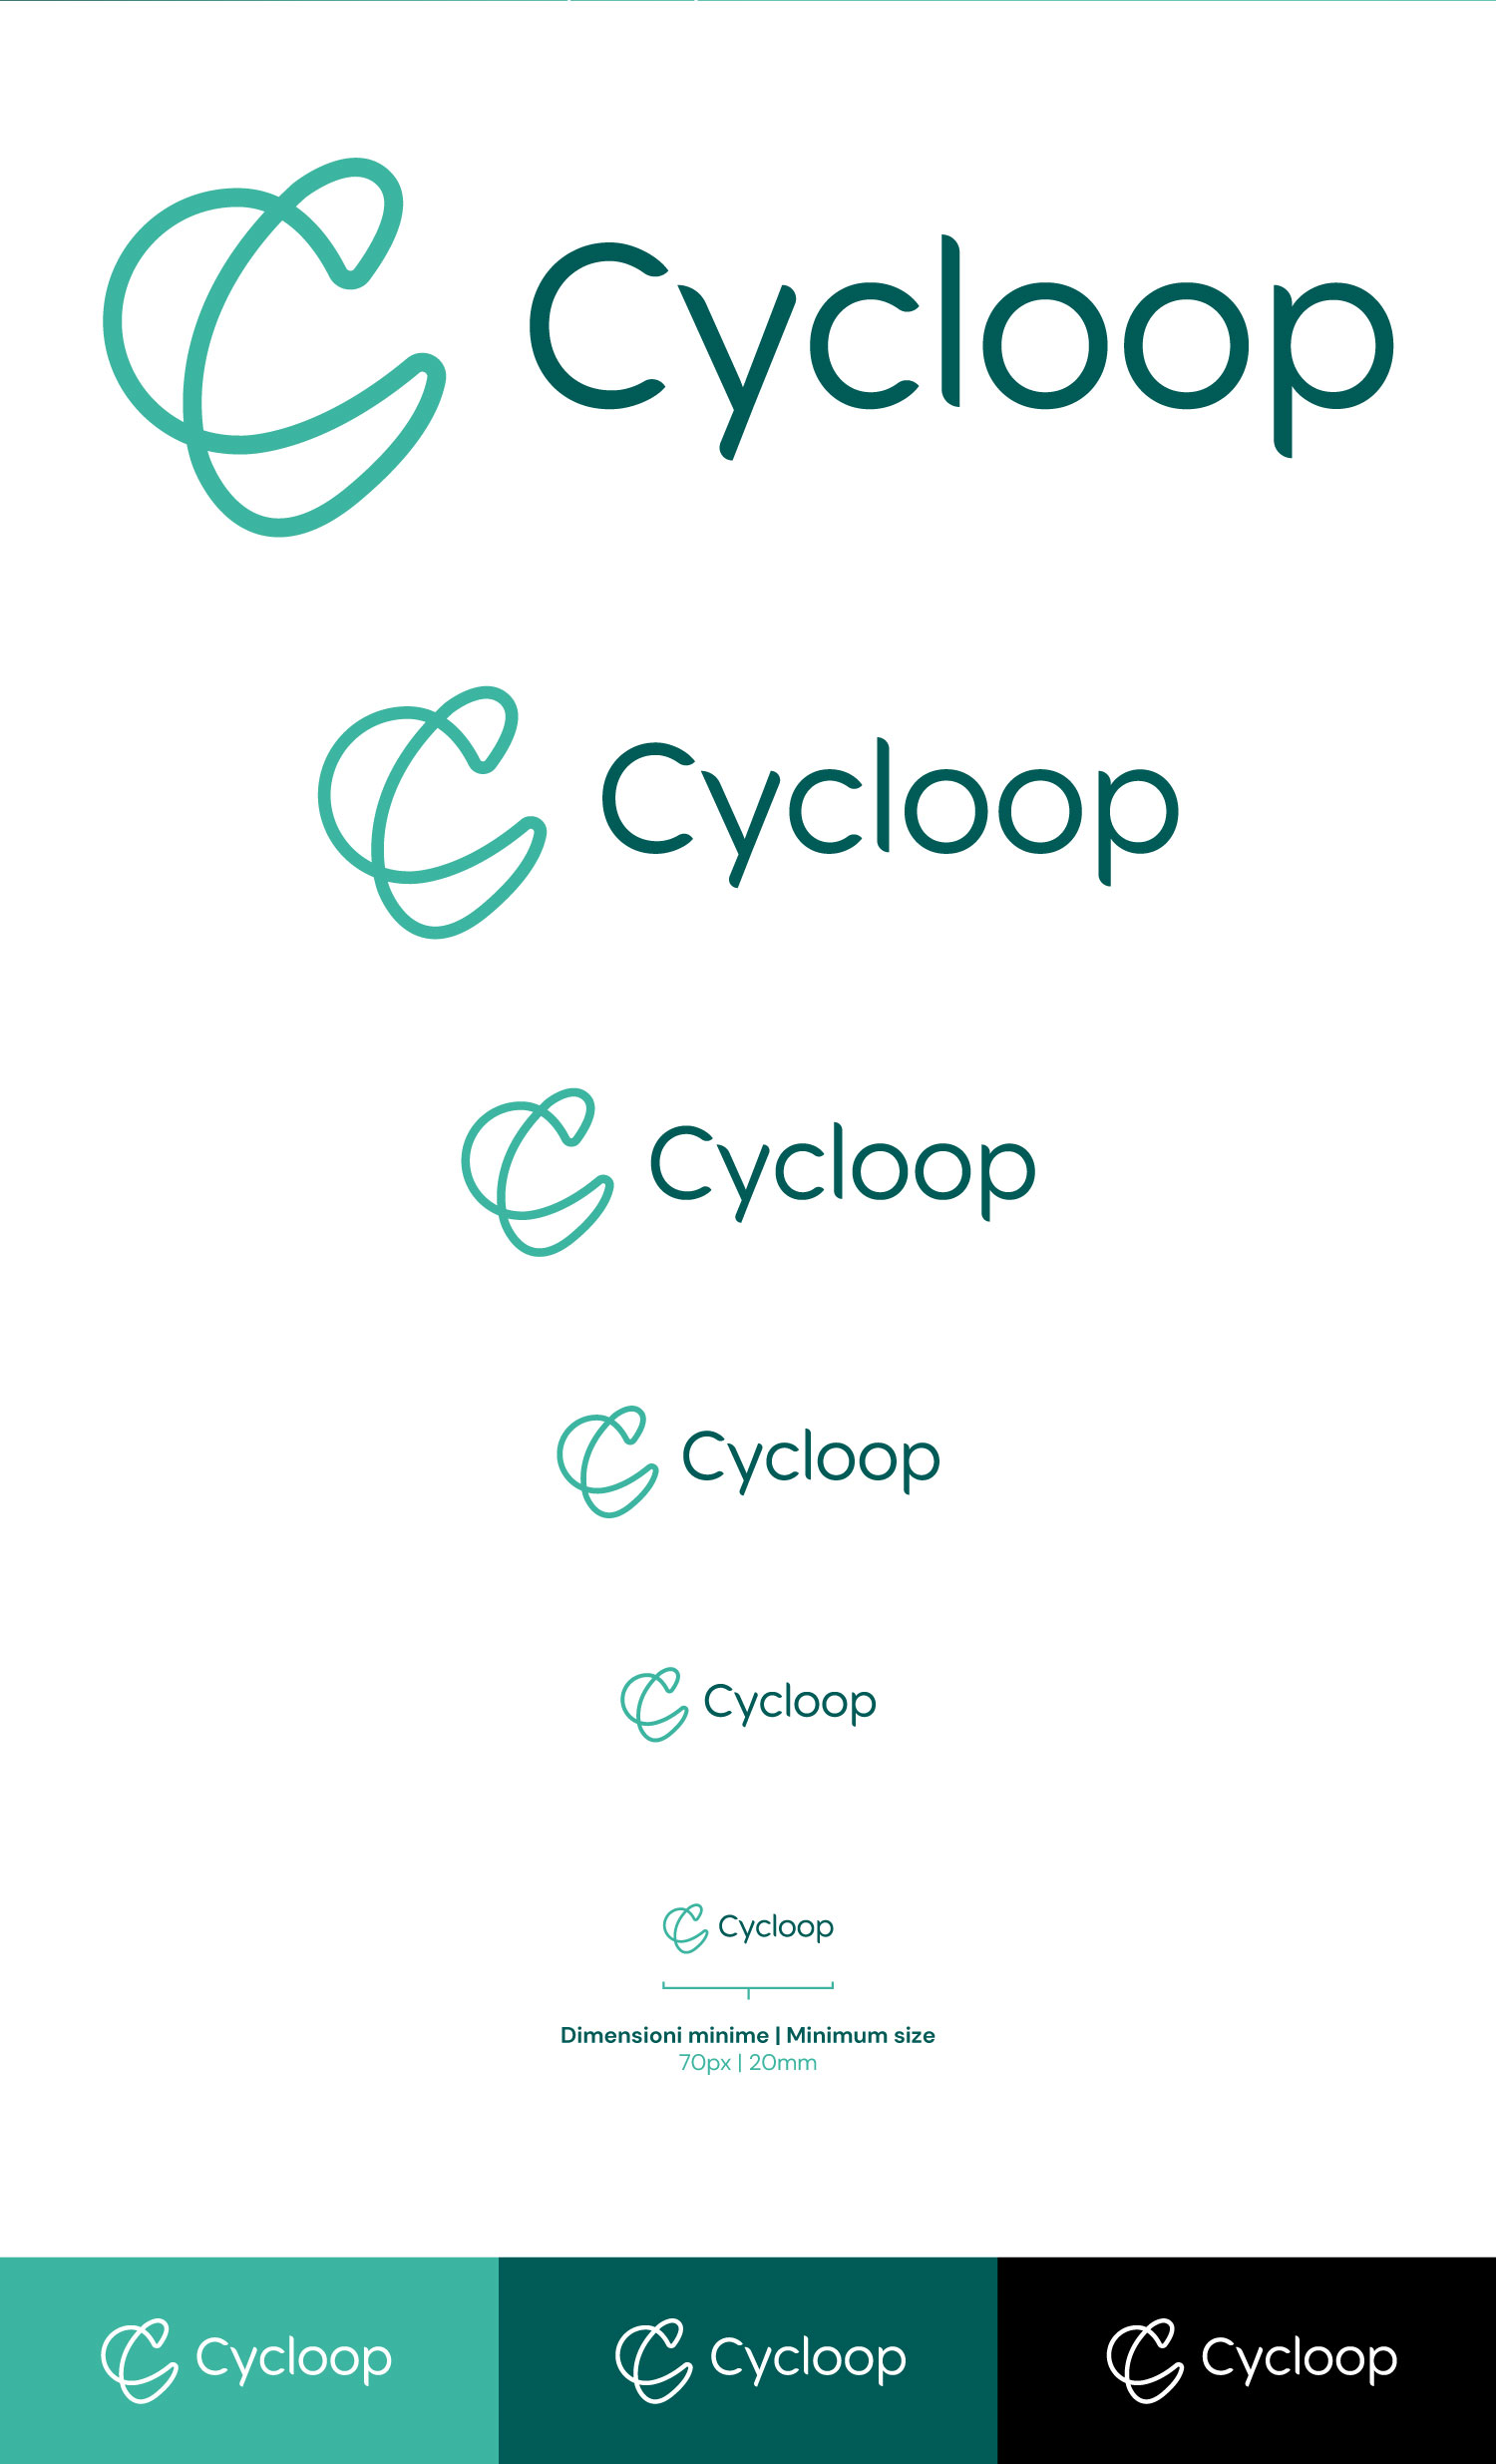 Logo e brand identity di Cycloop realizzato da SEBA! grafico di Gravellona Toce nel VCO delle varie dimensioni e versioni di logo